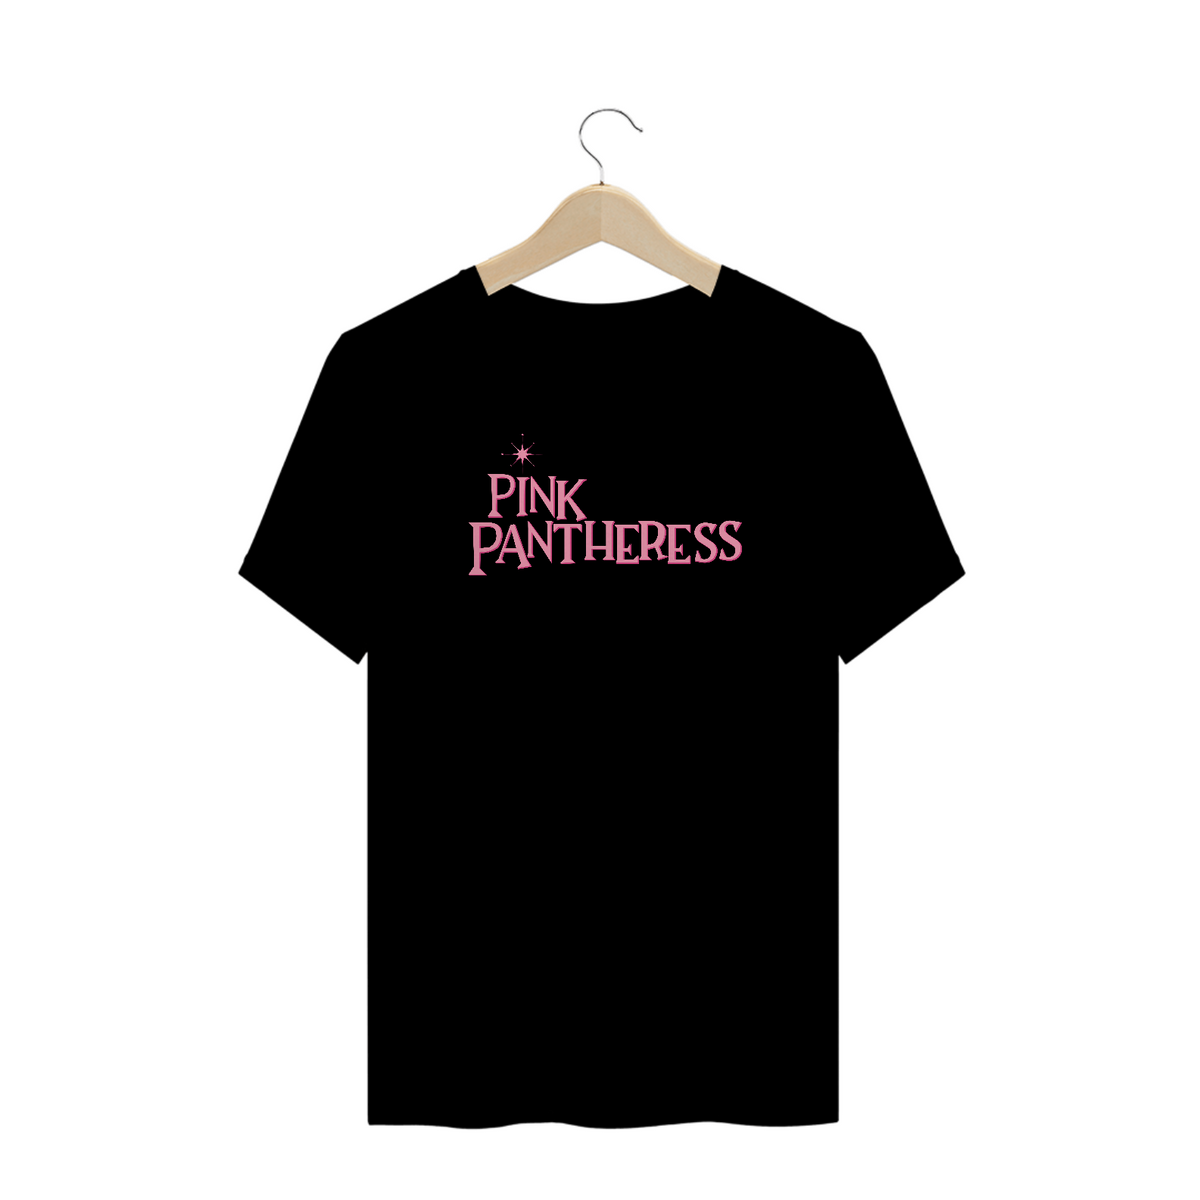 Nome do produto: THE PINKPANTHERESS SHOW (PLUS SIZE)